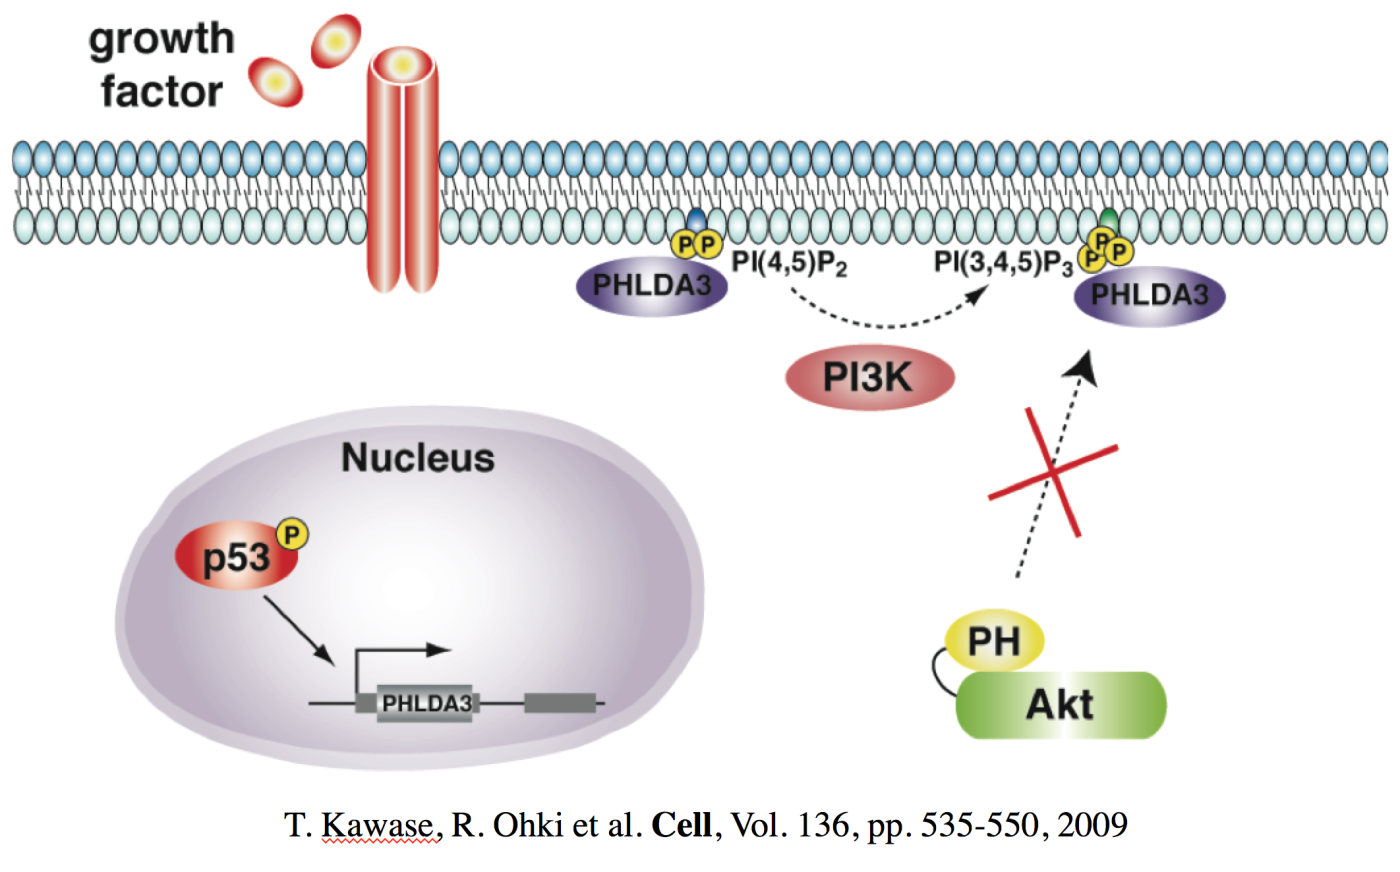 図3：B.p53標的遺伝子であり、がん抑制遺伝子であるPHLDA3の機能解析